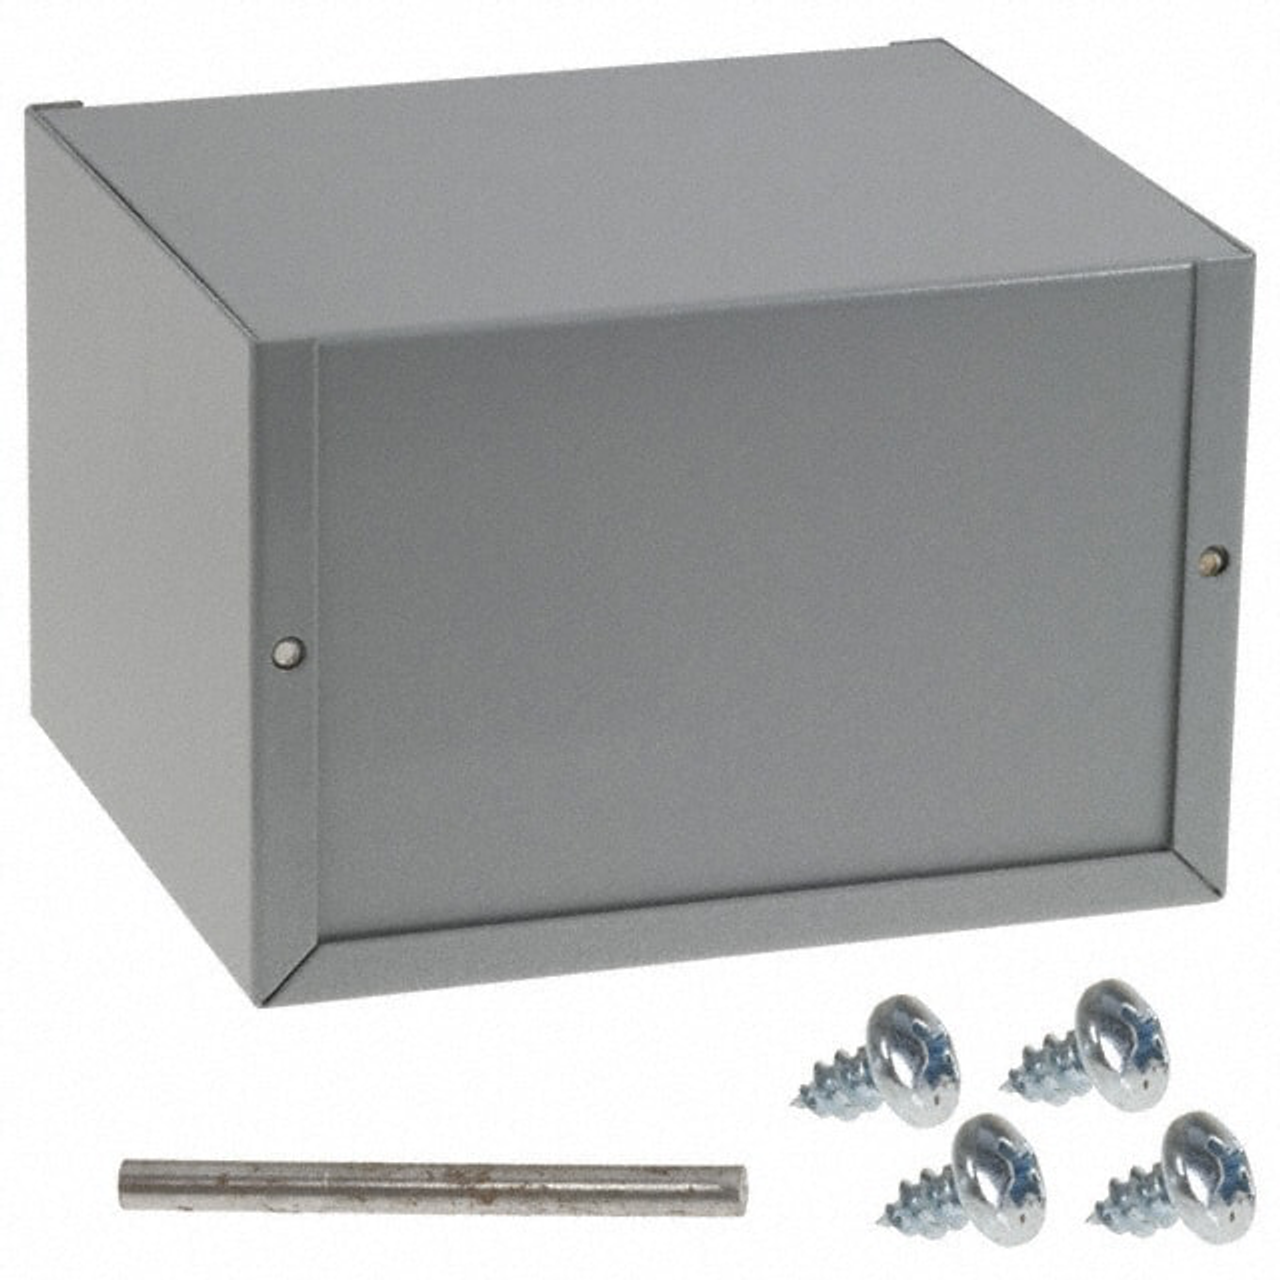 Bud Industries Inc. CU-2107-B Minibox Cabinet